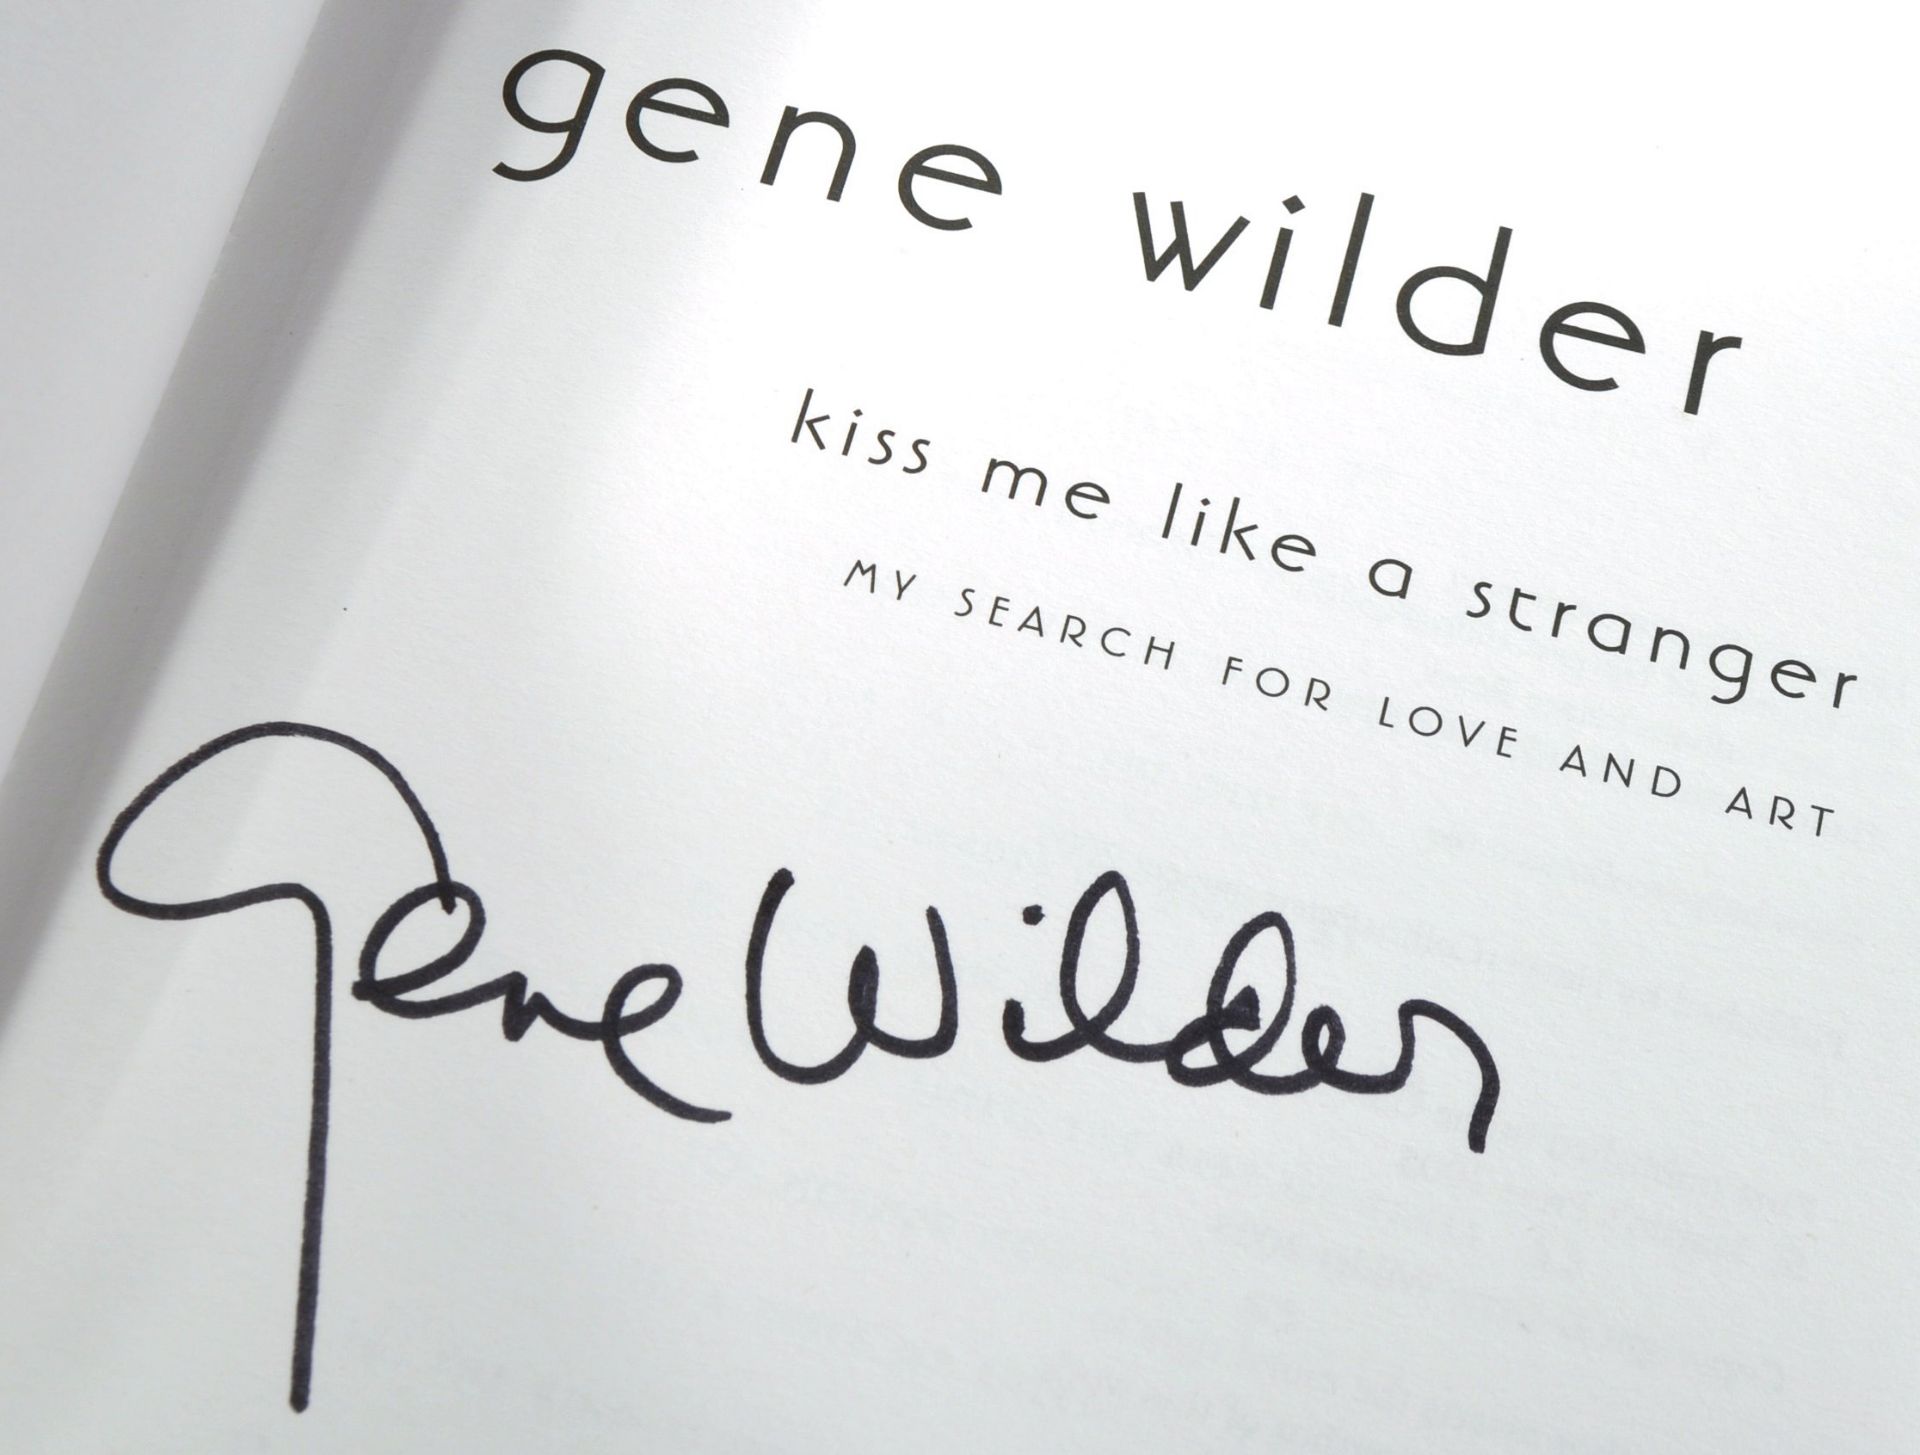 GENE WILDER (1933-2016) - KISS ME LIKE A STRANGER - SIGNED BOOK - Image 2 of 5